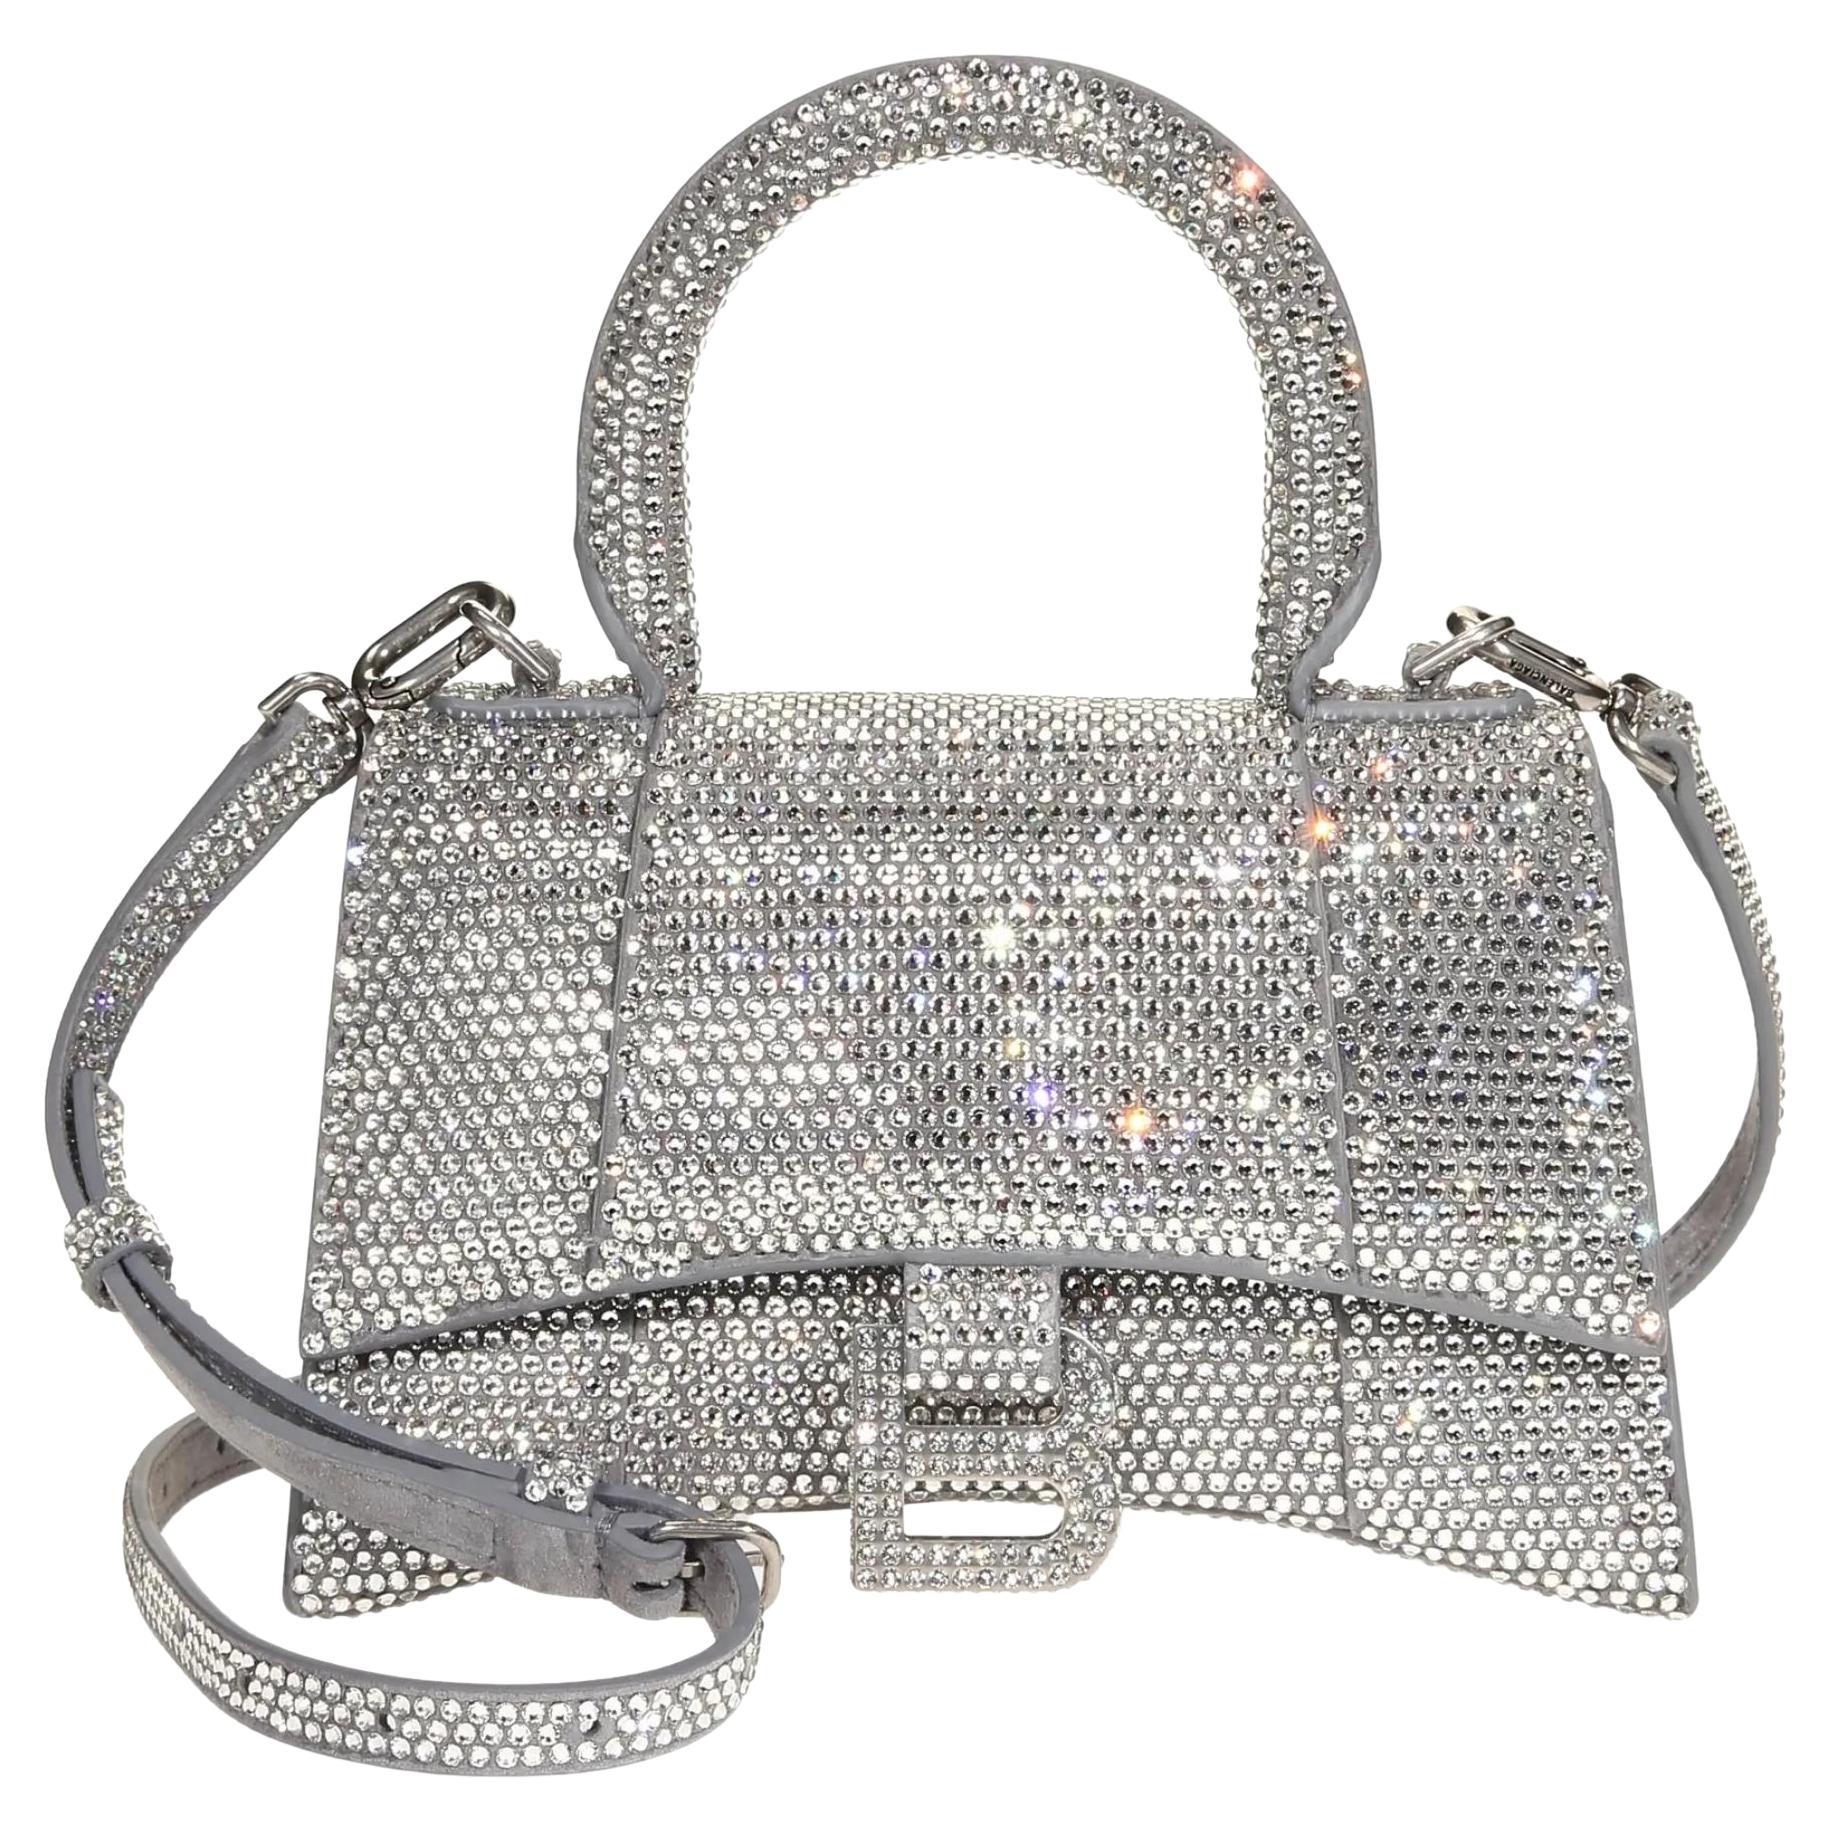 Balenciaga - Authenticated Hourglass Handbag - Suede Silver for Women, Never Worn